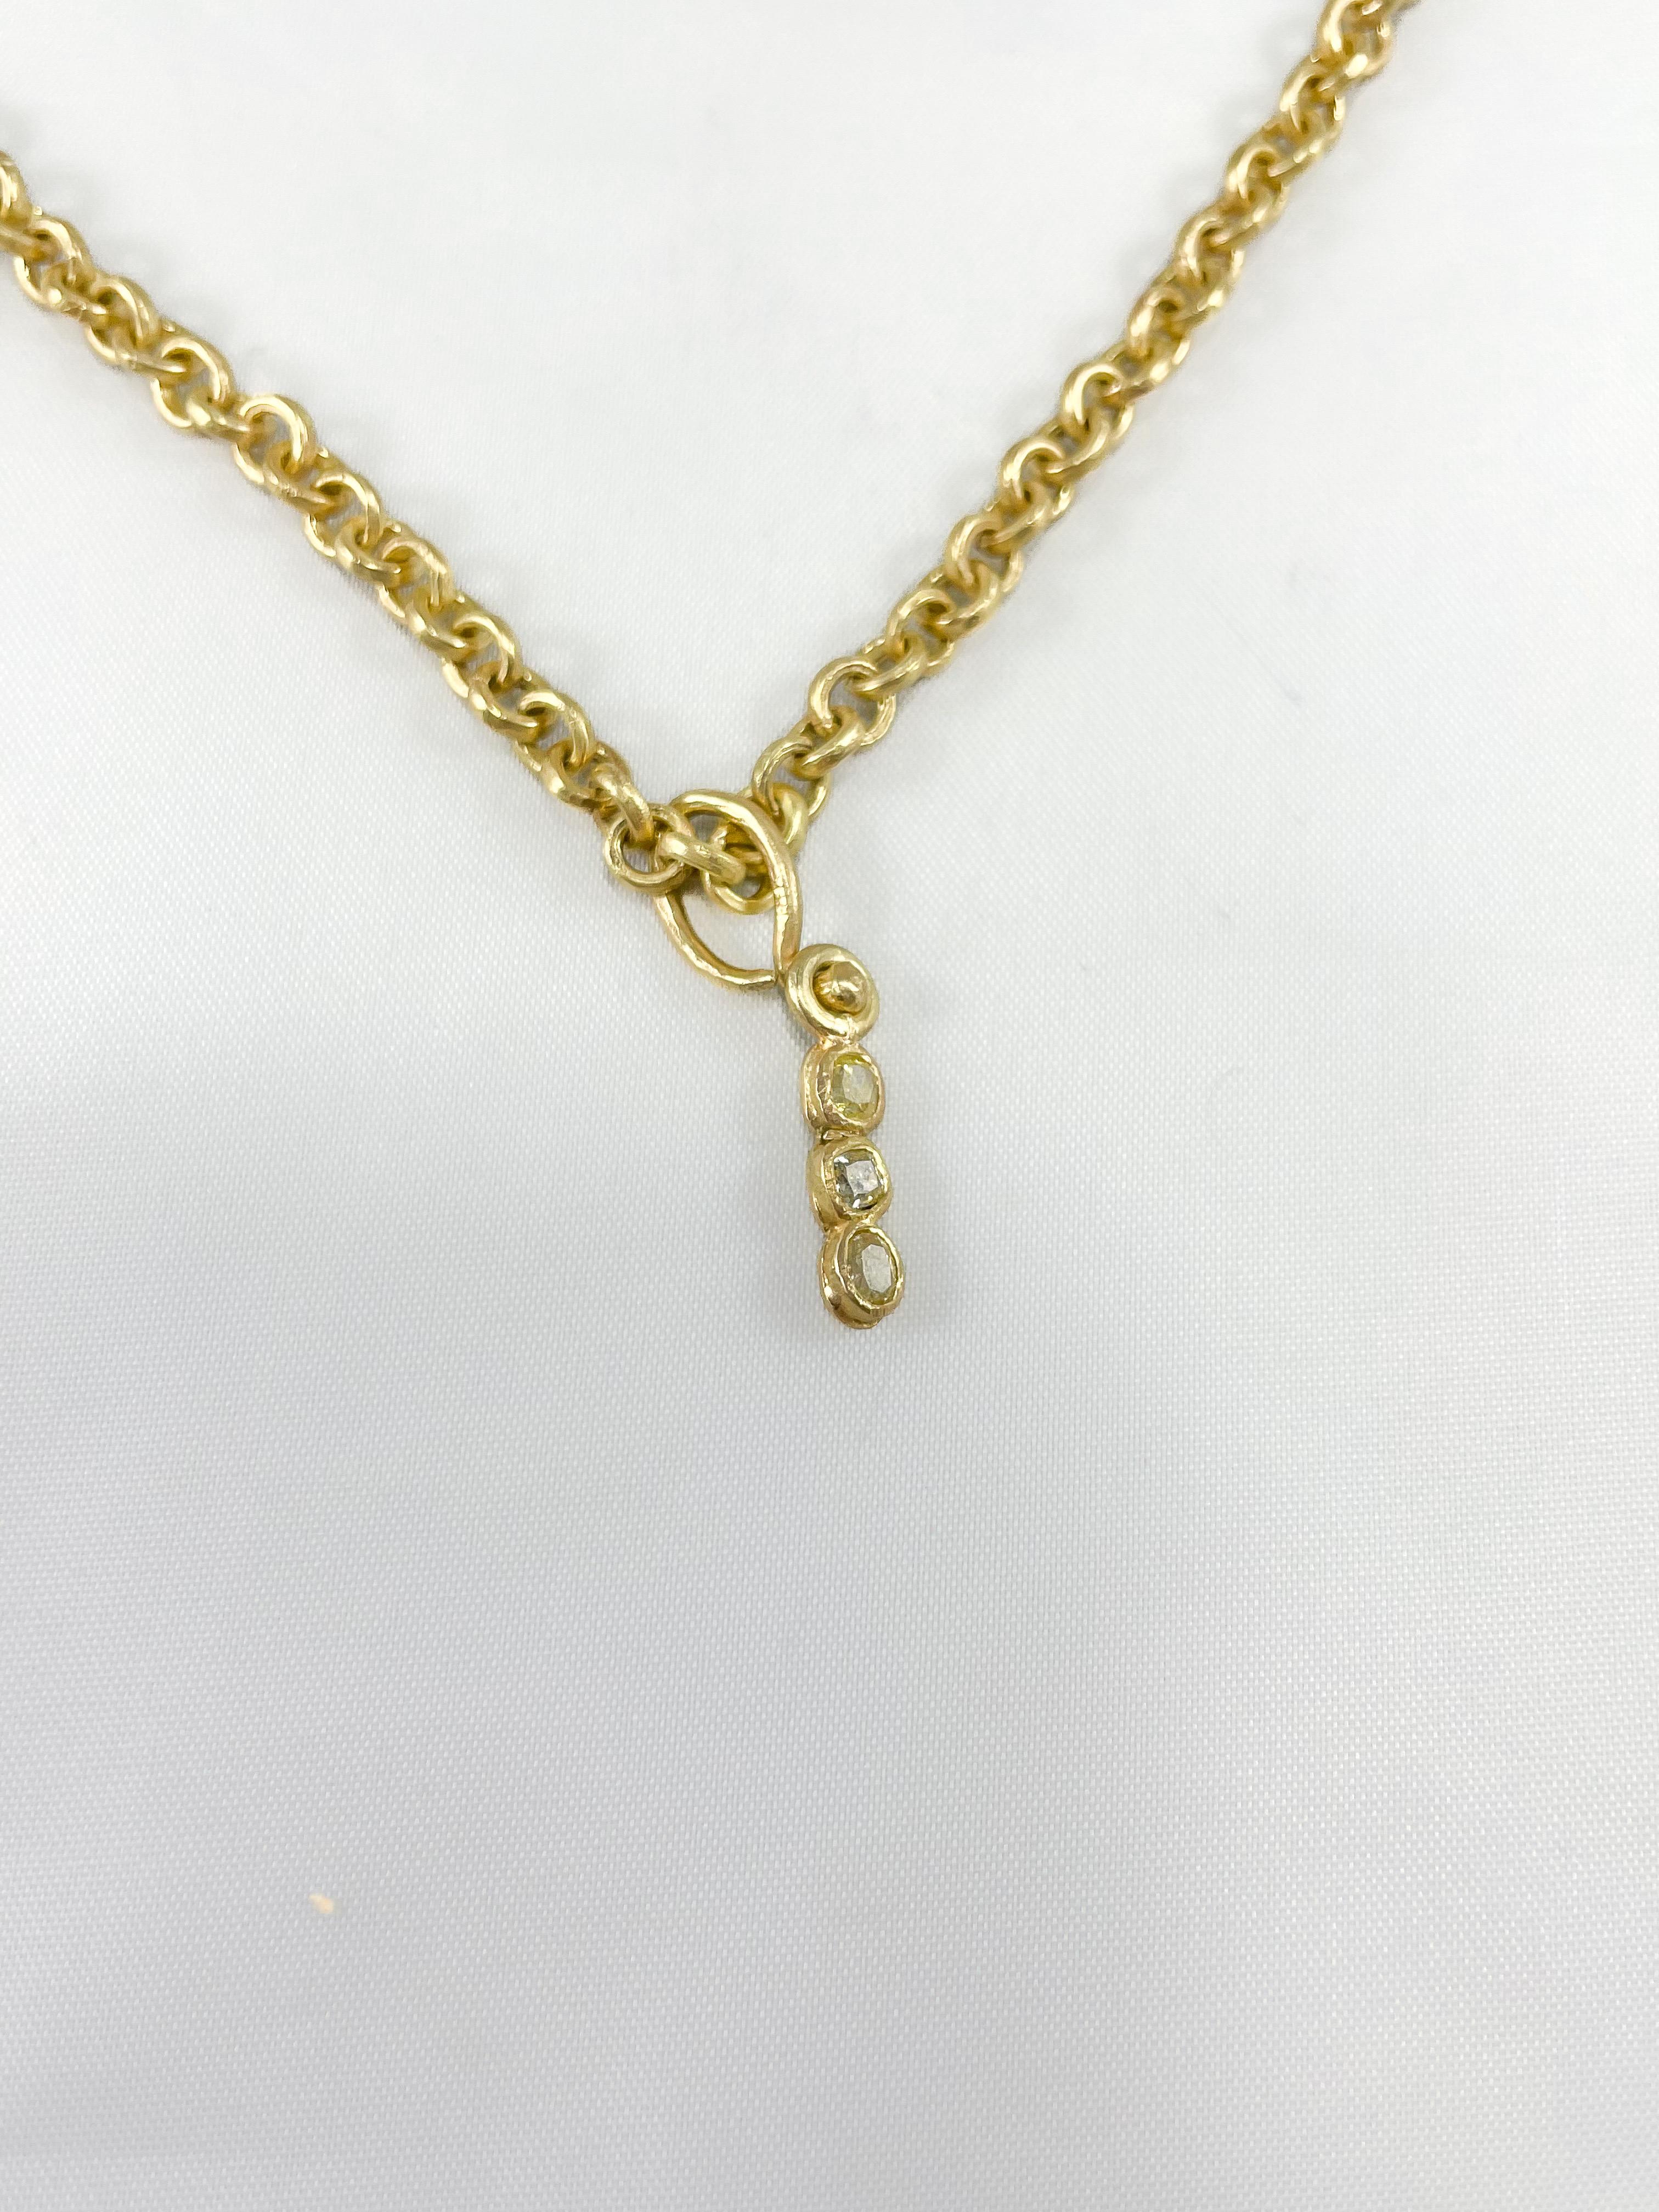 Eine massive Gliederkette, handgefertigt aus recyceltem 18-karätigem Gold. Die Halskette besteht aus runden, gleichmäßig geformten Gliedern. 18